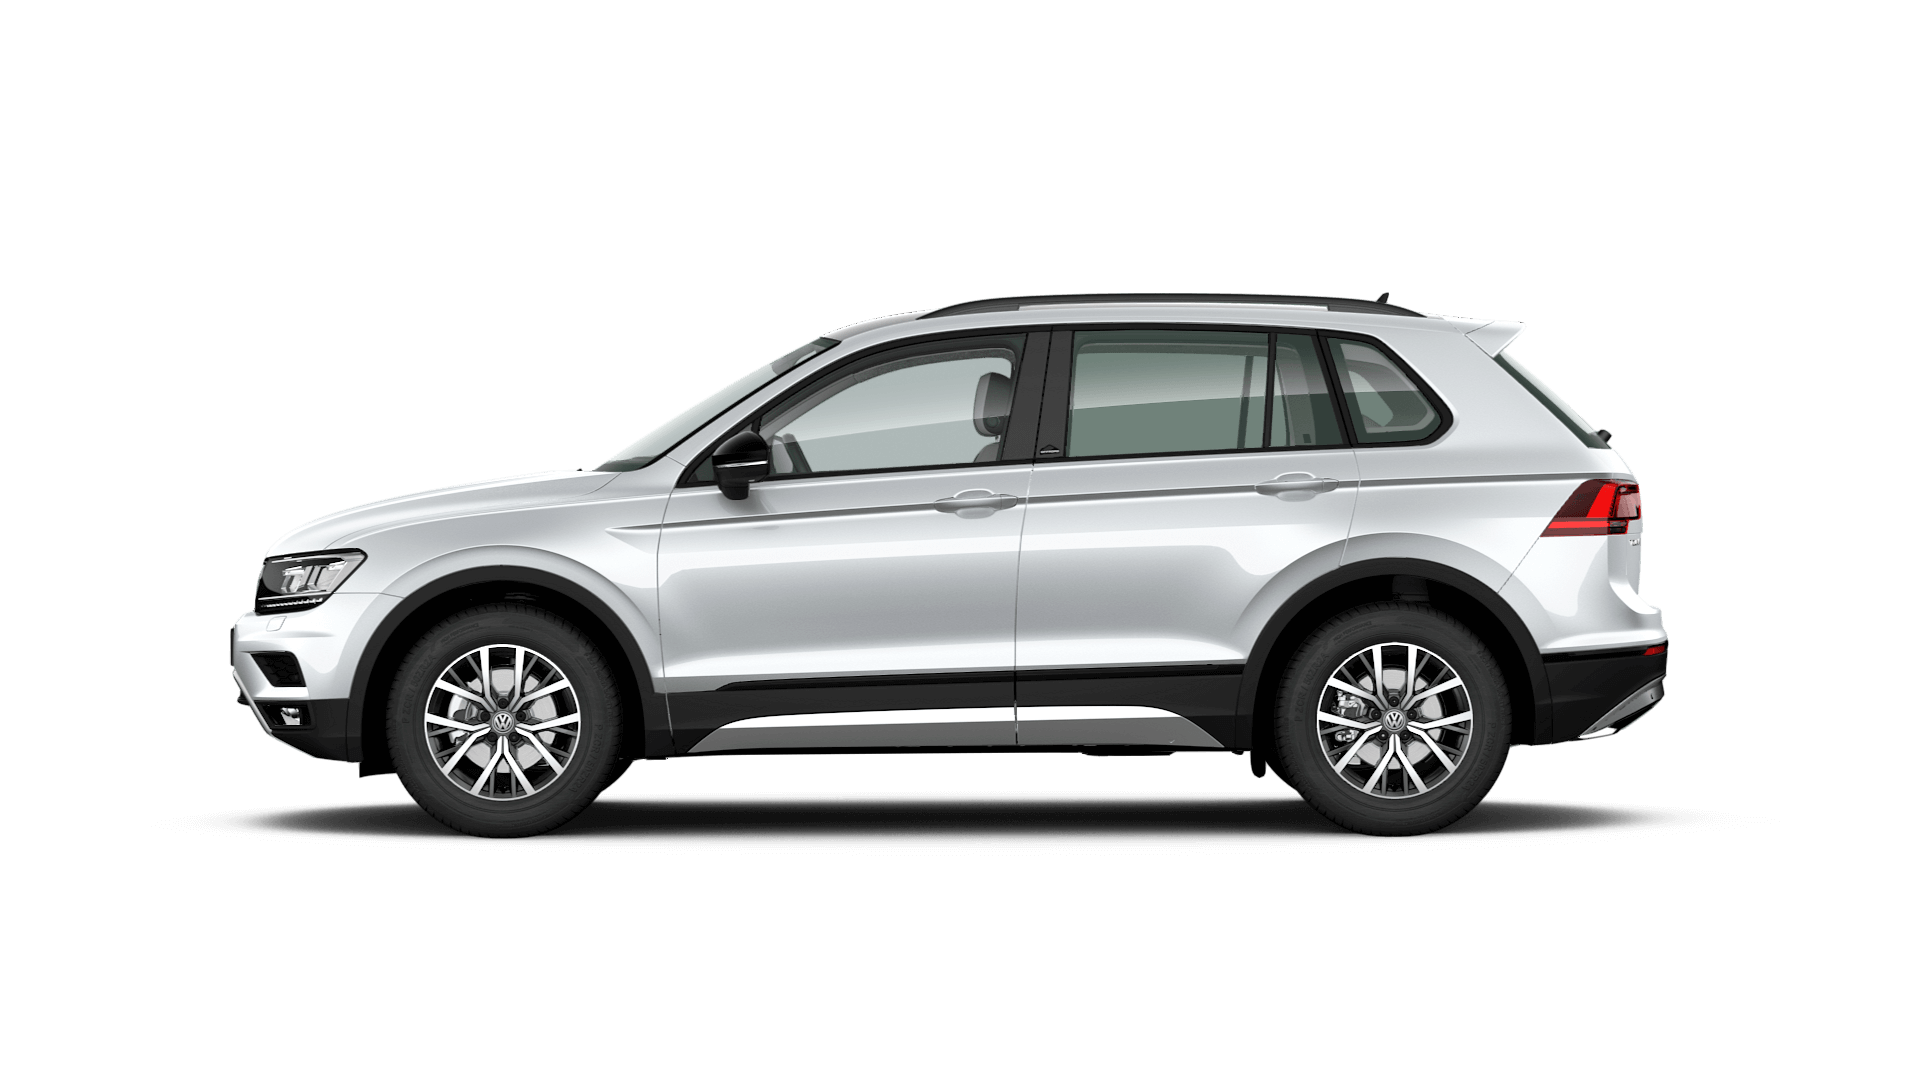 Volkswagen Tiguan OFFROAD в Волга-Раст – комфортный и приемлемый по цене внедорожник